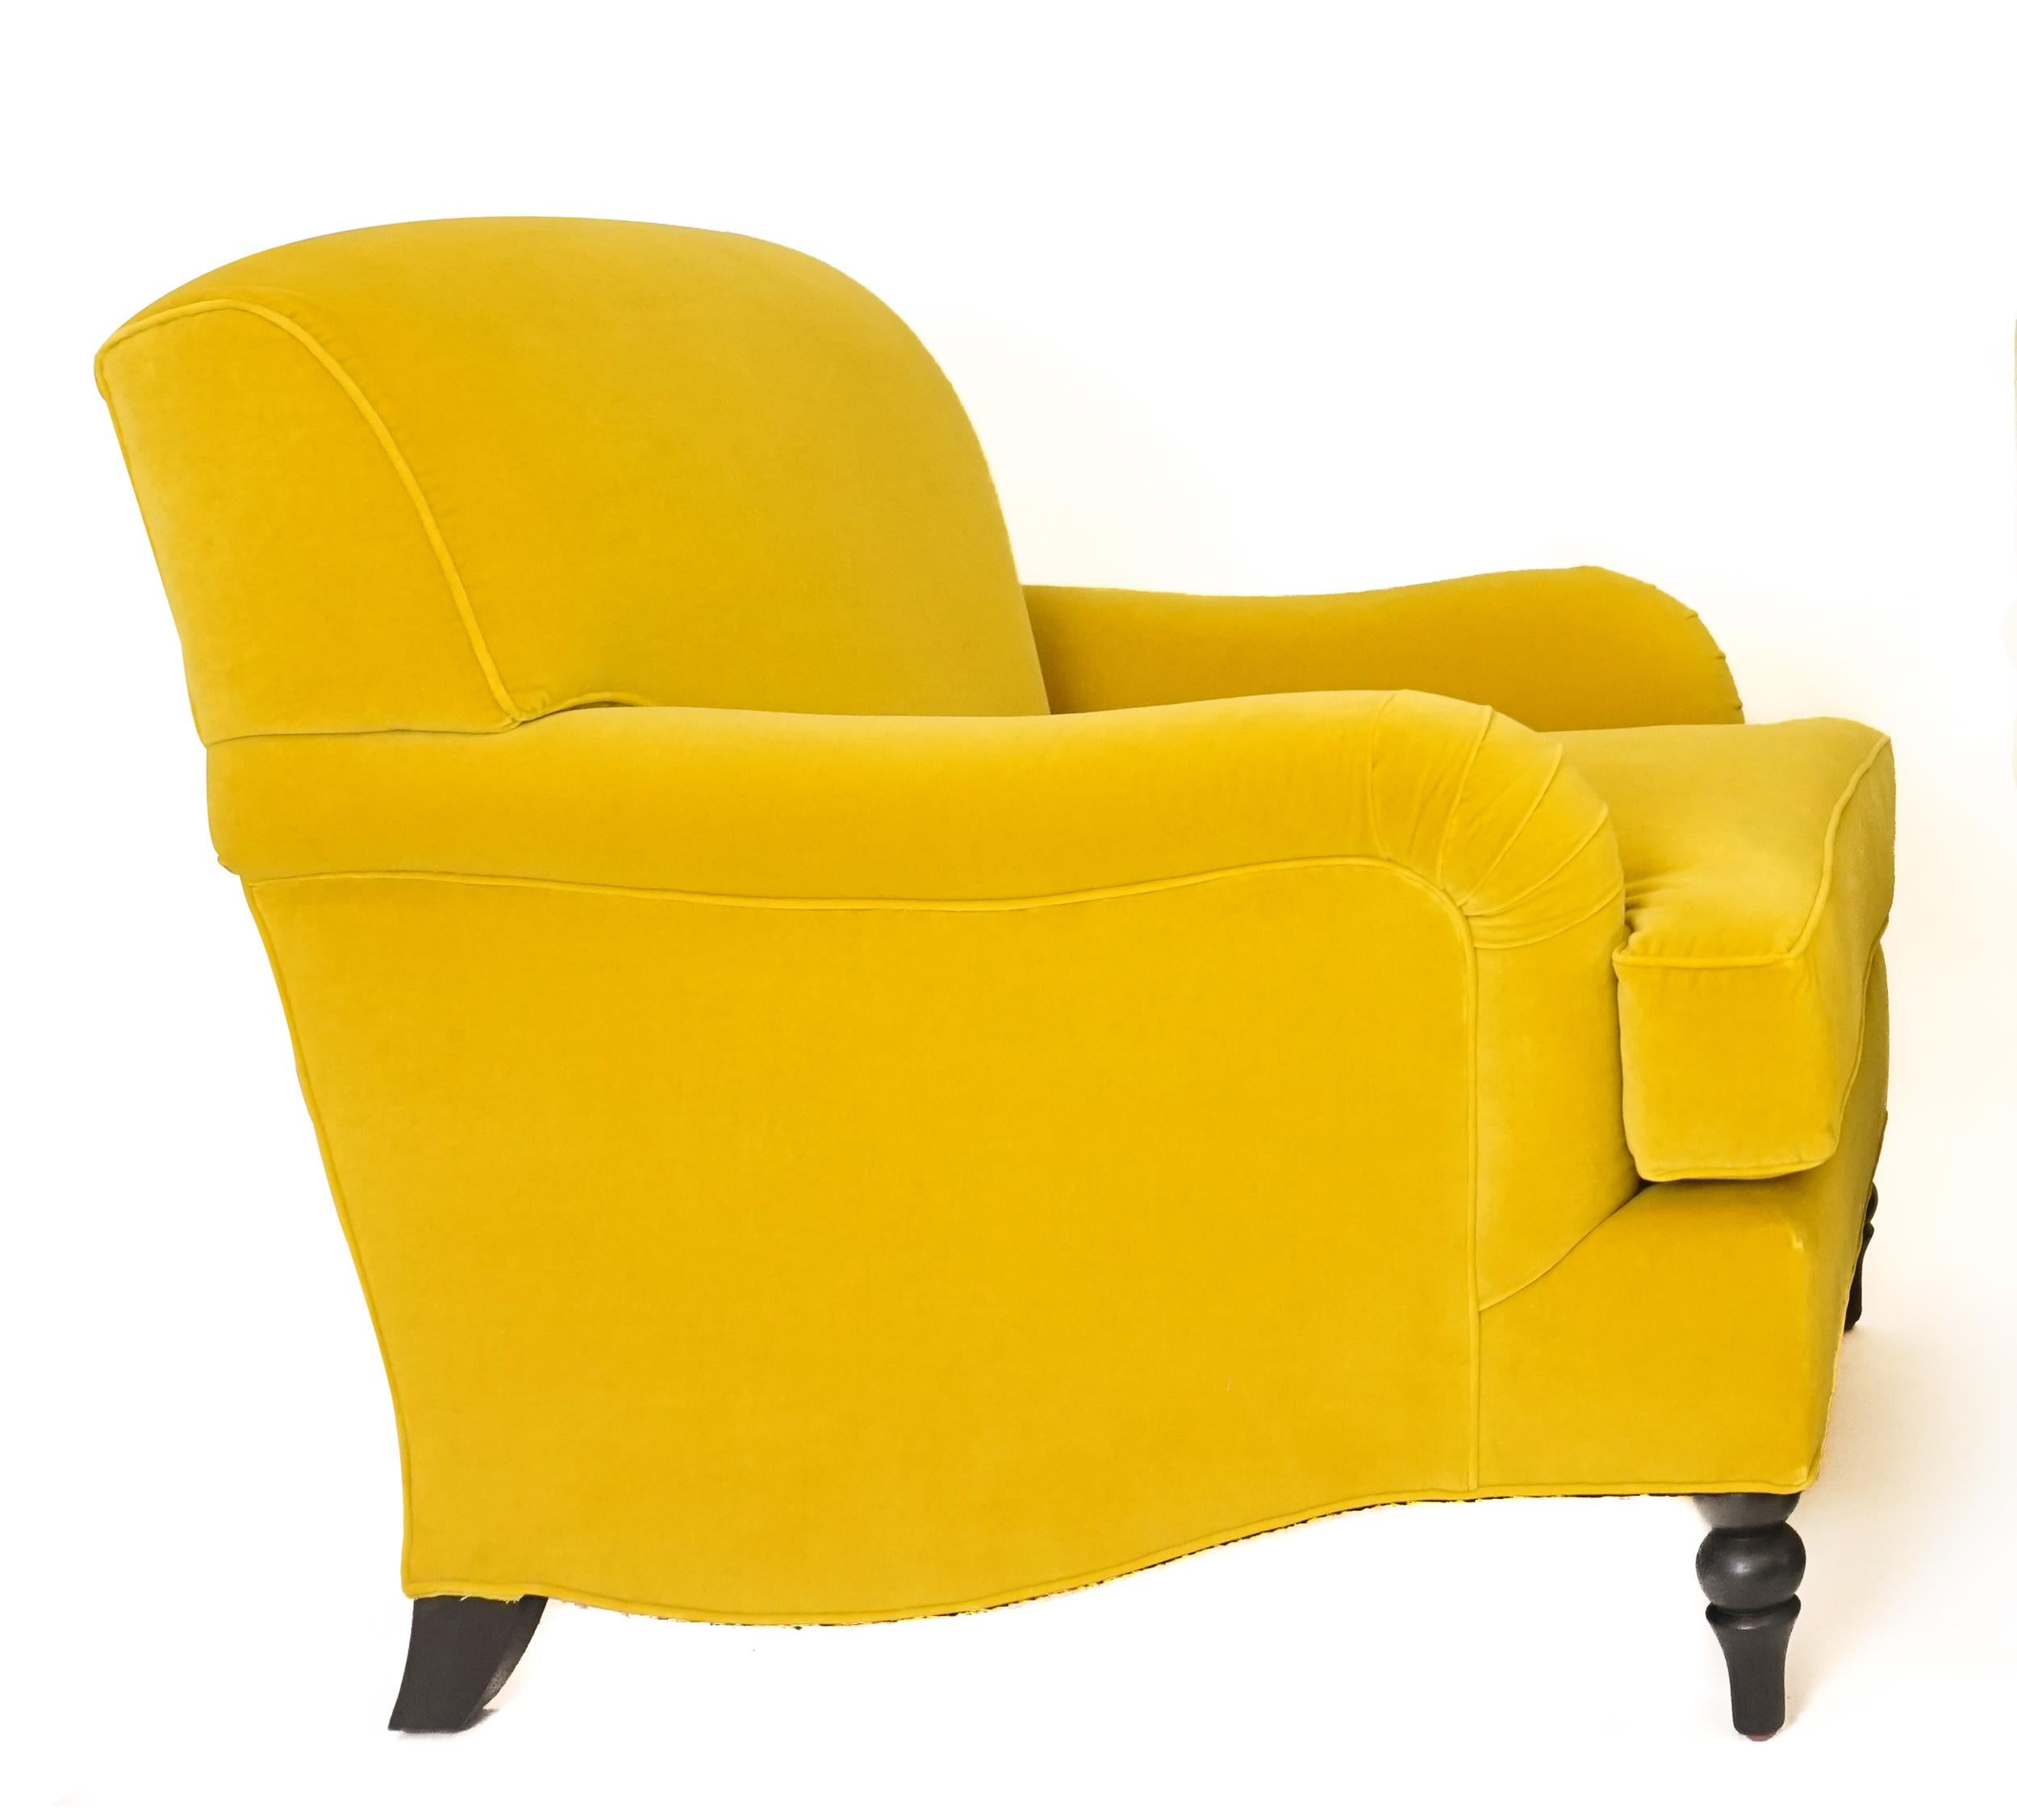 Über dieses Stück
Der Marylebone Club Chair ist ein moderner englischer Rollarmstuhl mit fester Rückenlehne und lockerem Sitzkissen. Die gezeigten Stühle sind mit einem türkisfarbenen Samt bezogen und haben eine Paspel entlang des Sitzkissens. Der